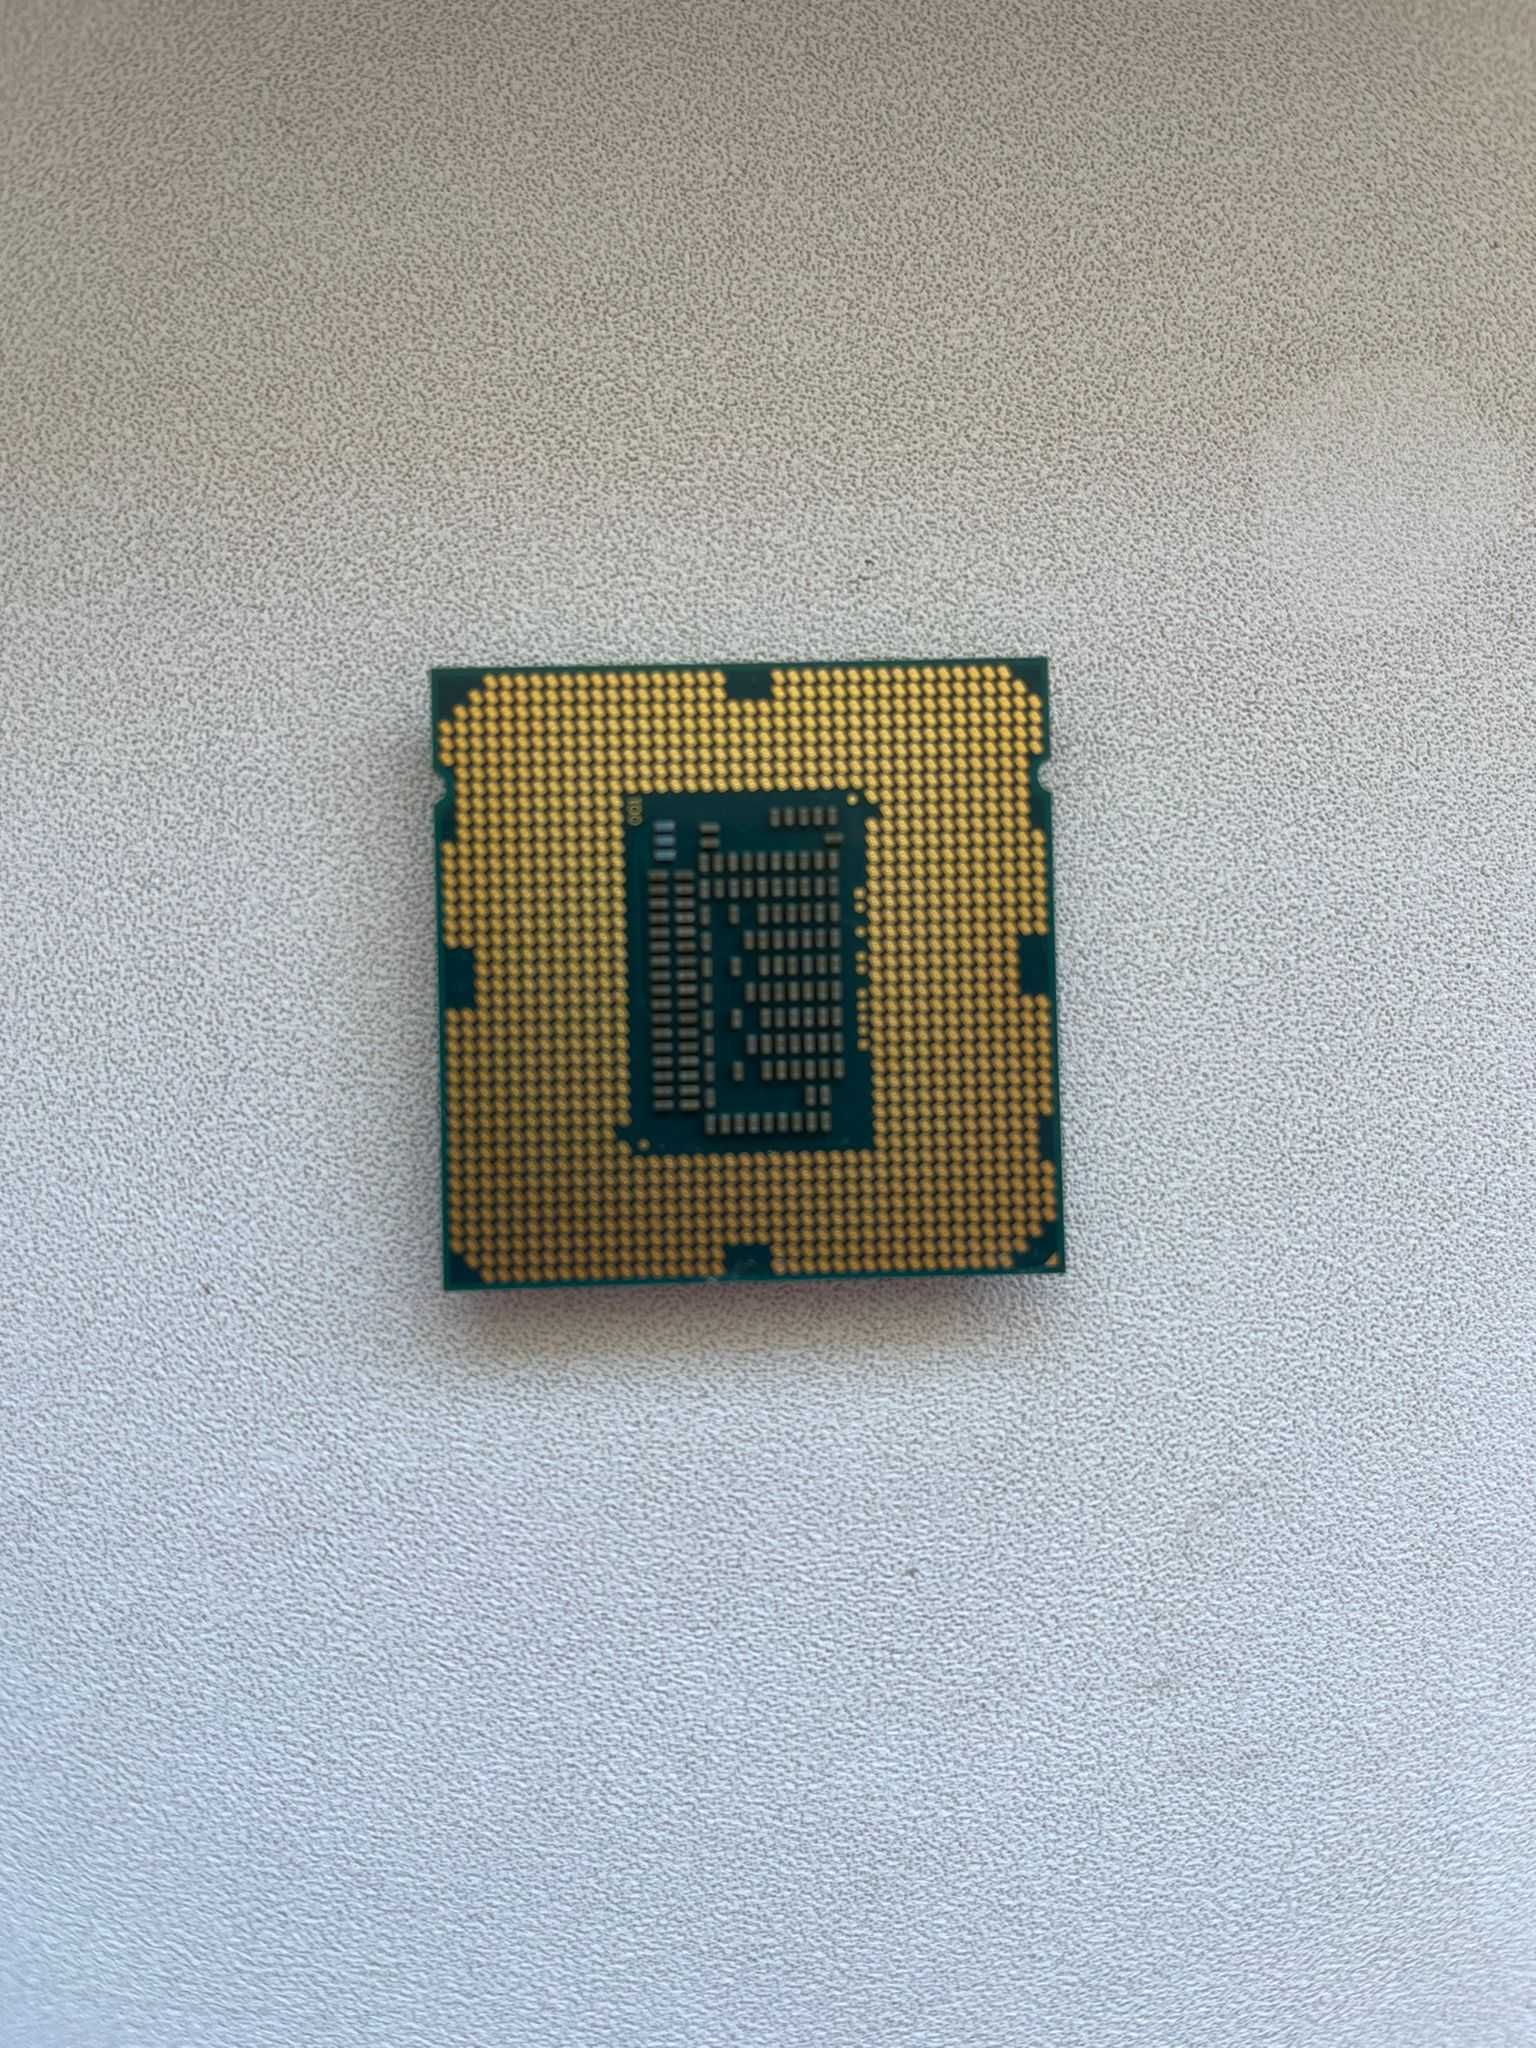 Procesor Intel i5-3470 3.2GHz LGA1155